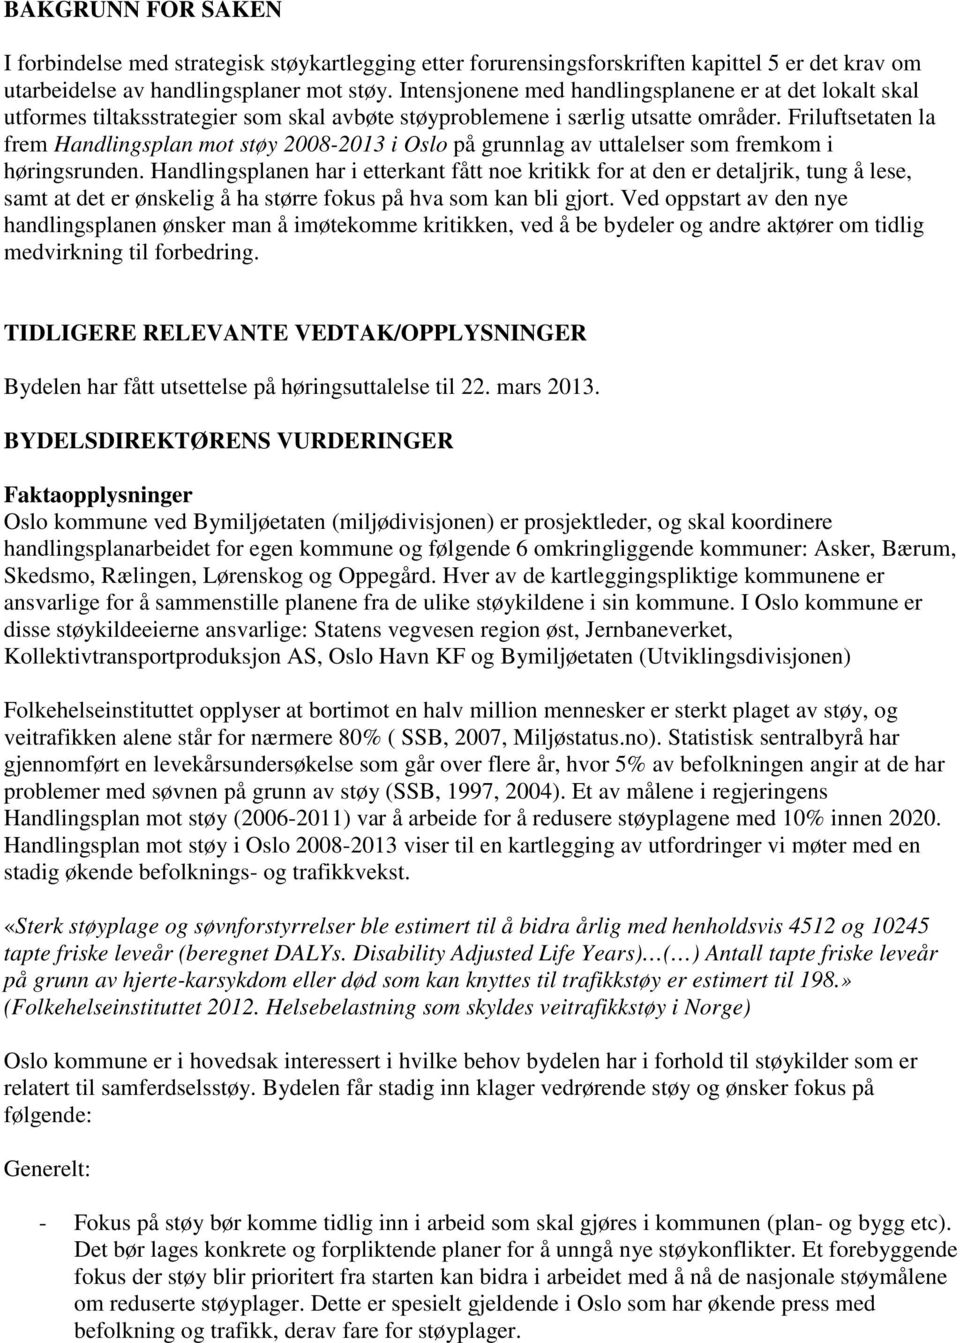 Friluftsetaten la frem Handlingsplan mot støy 2008-2013 i Oslo på grunnlag av uttalelser som fremkom i høringsrunden.